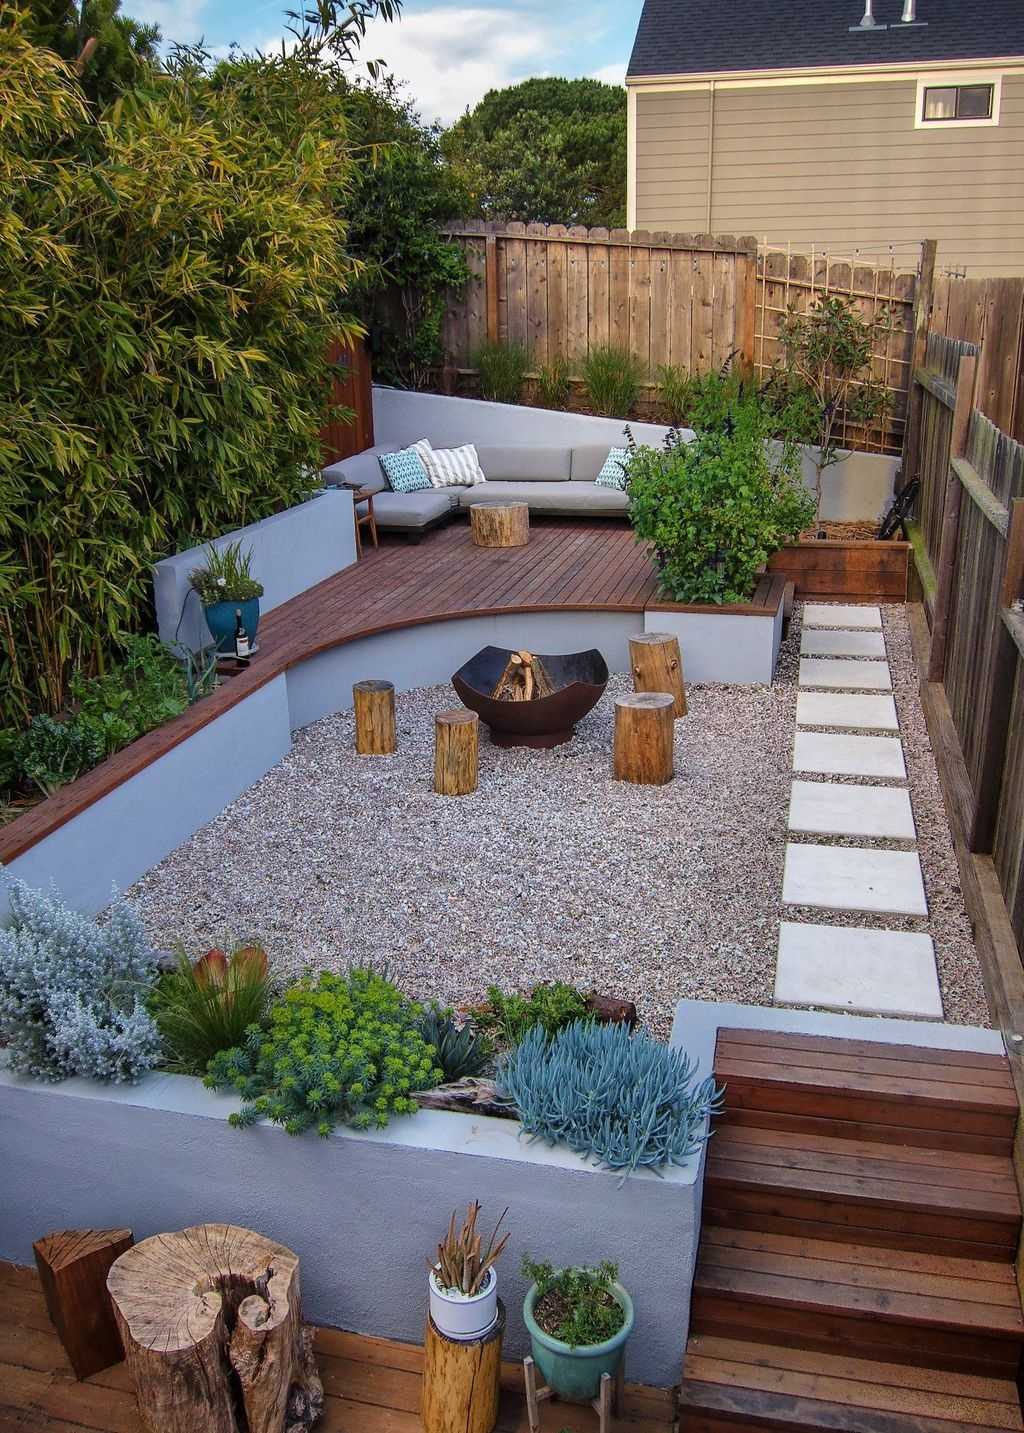  diy backyard garden design